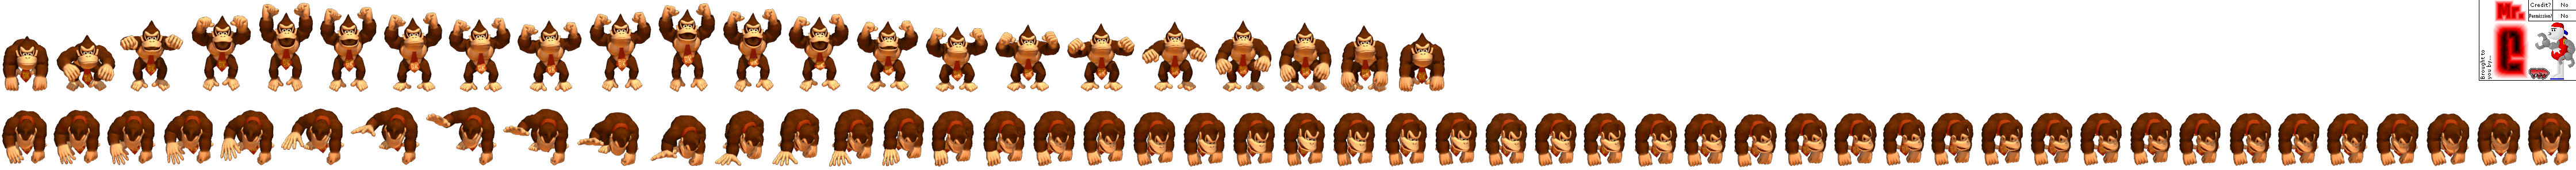 Donkey Konga 2 - Donkey Kong (Results Screen)